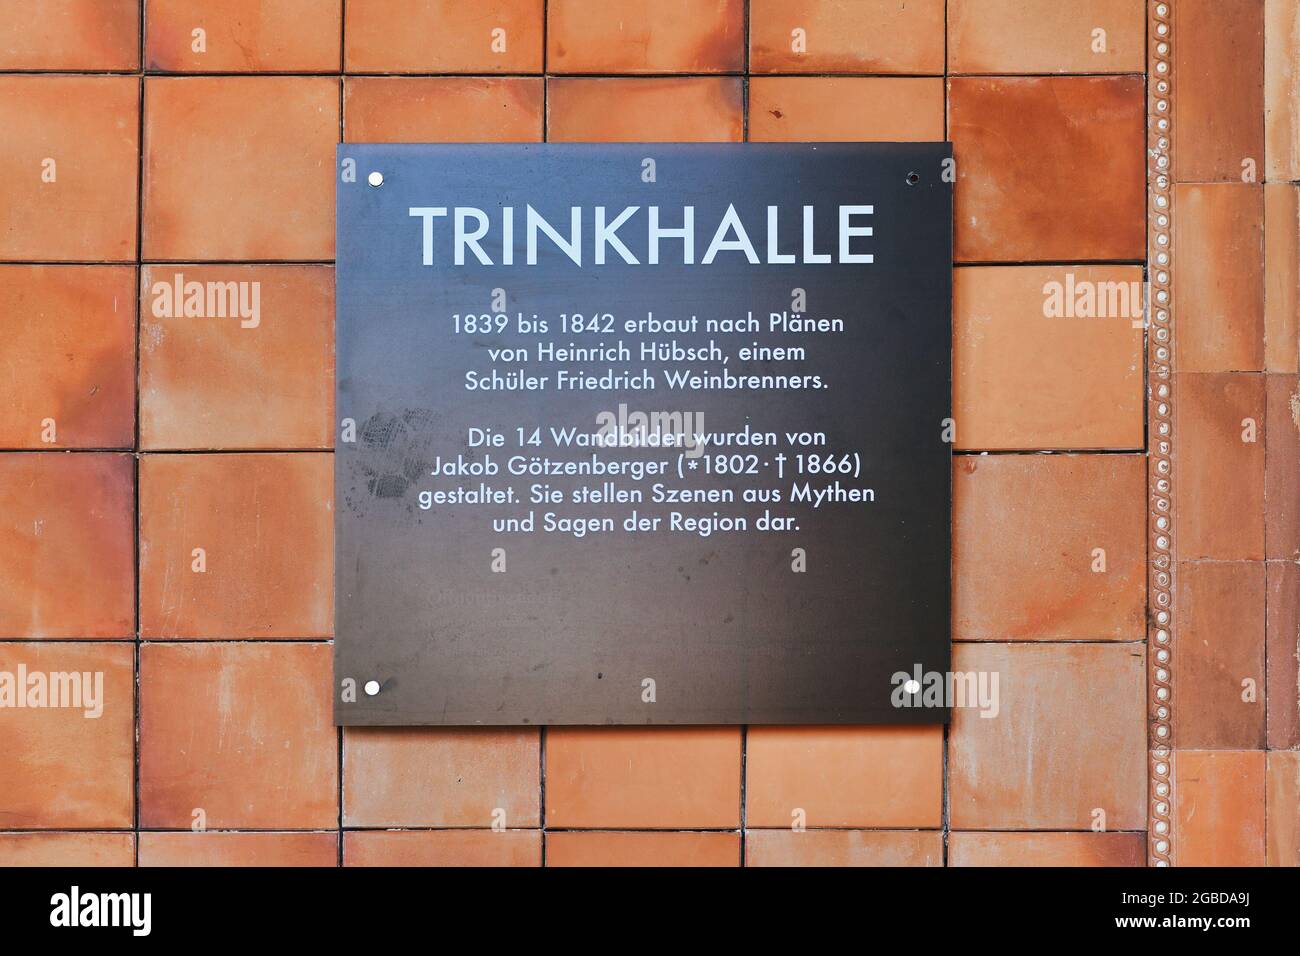 Baden-Baden, Allemagne - juillet 2021: Panneau d'information à l'entrée de la pompe historique appelée 'Trinkhalle' Banque D'Images